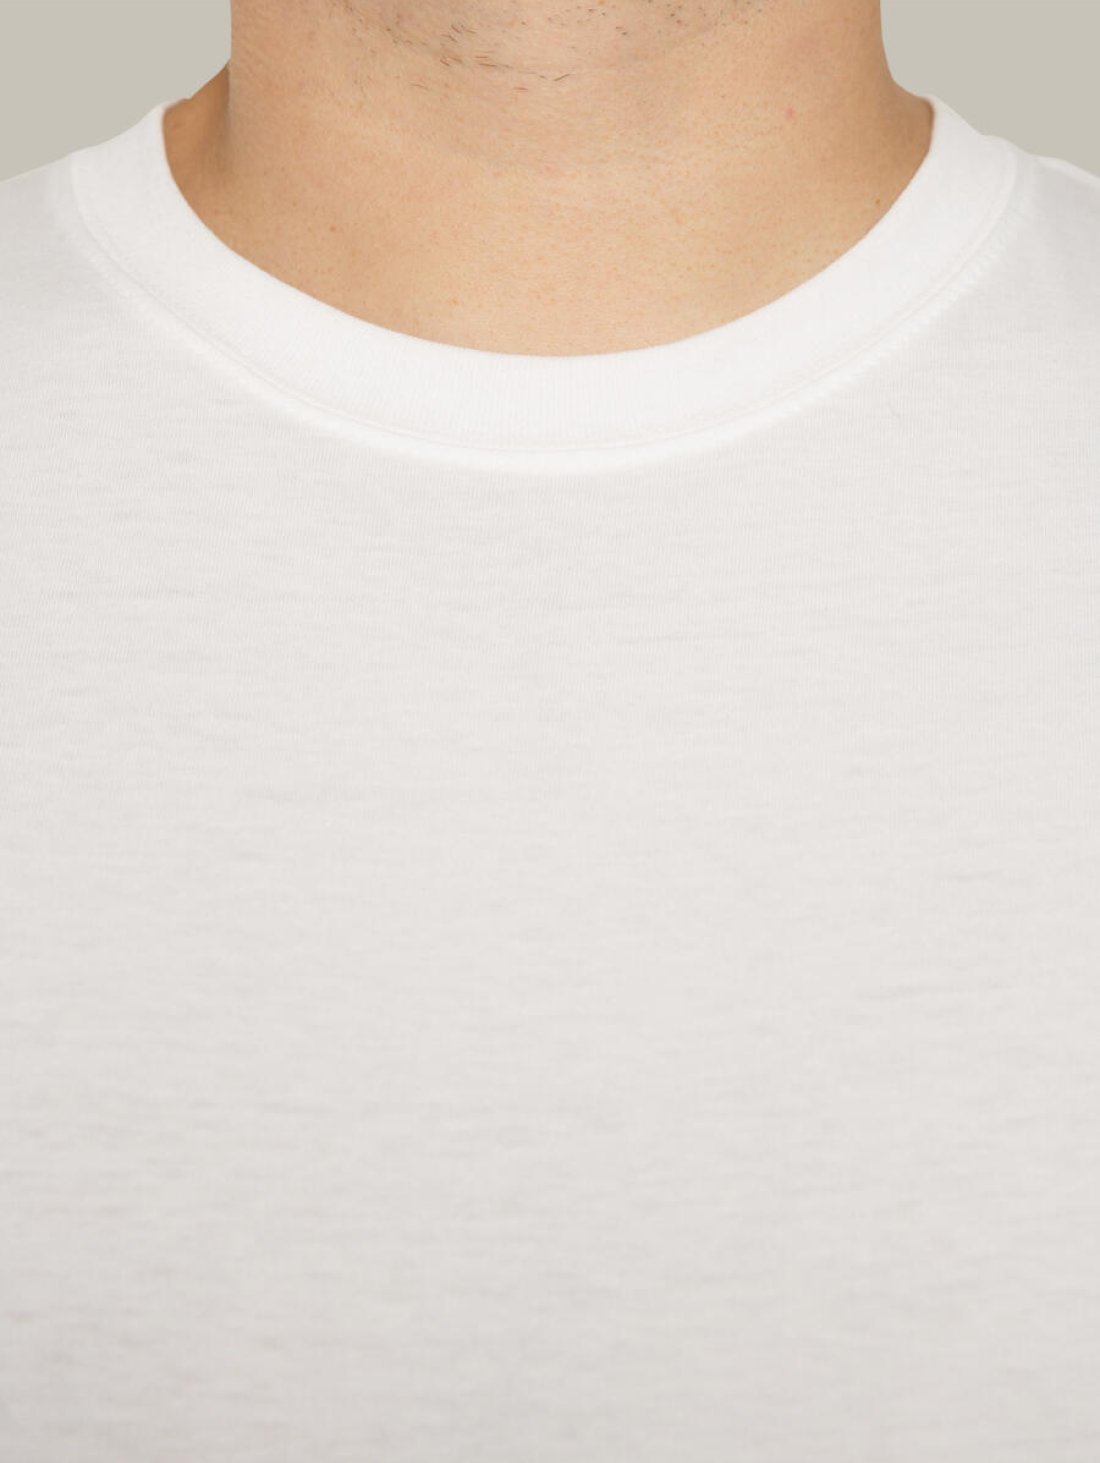 Чоловіча футболка, біла з принтом аватара Hopper 021